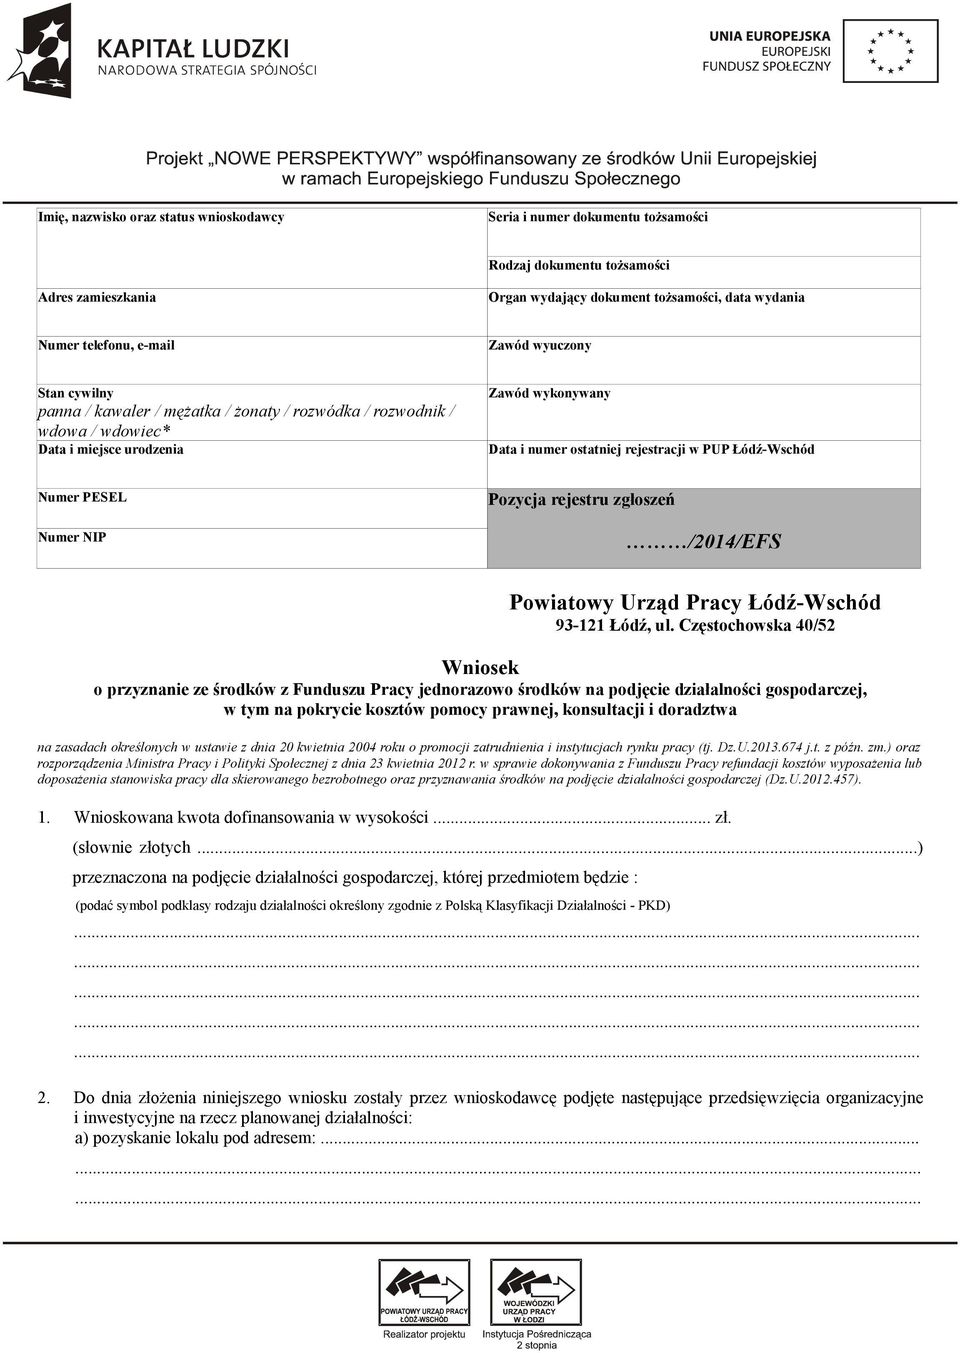 PESEL Numer NIP Pozycja rejestru zgłoszeń /2014/EFS Powiatowy Urząd Pracy Łódź-Wschód 93-121 Łódź, ul.